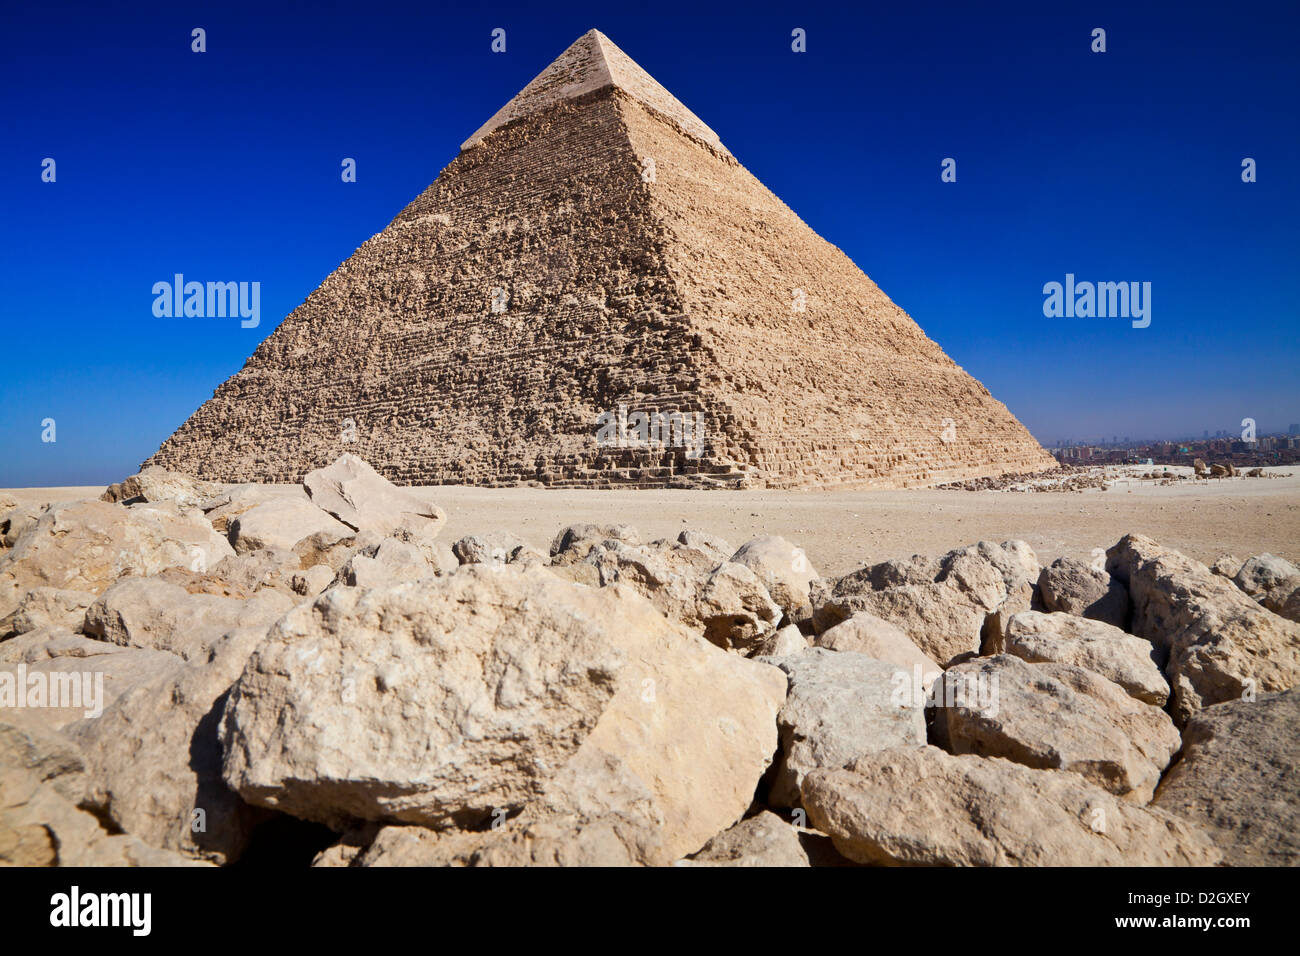 Piramide di Khafre,Chephren,o Chefren,è la seconda più grande del complesso o necropoli sull'altopiano di Giza vicino al Cairo, Egitto Foto Stock